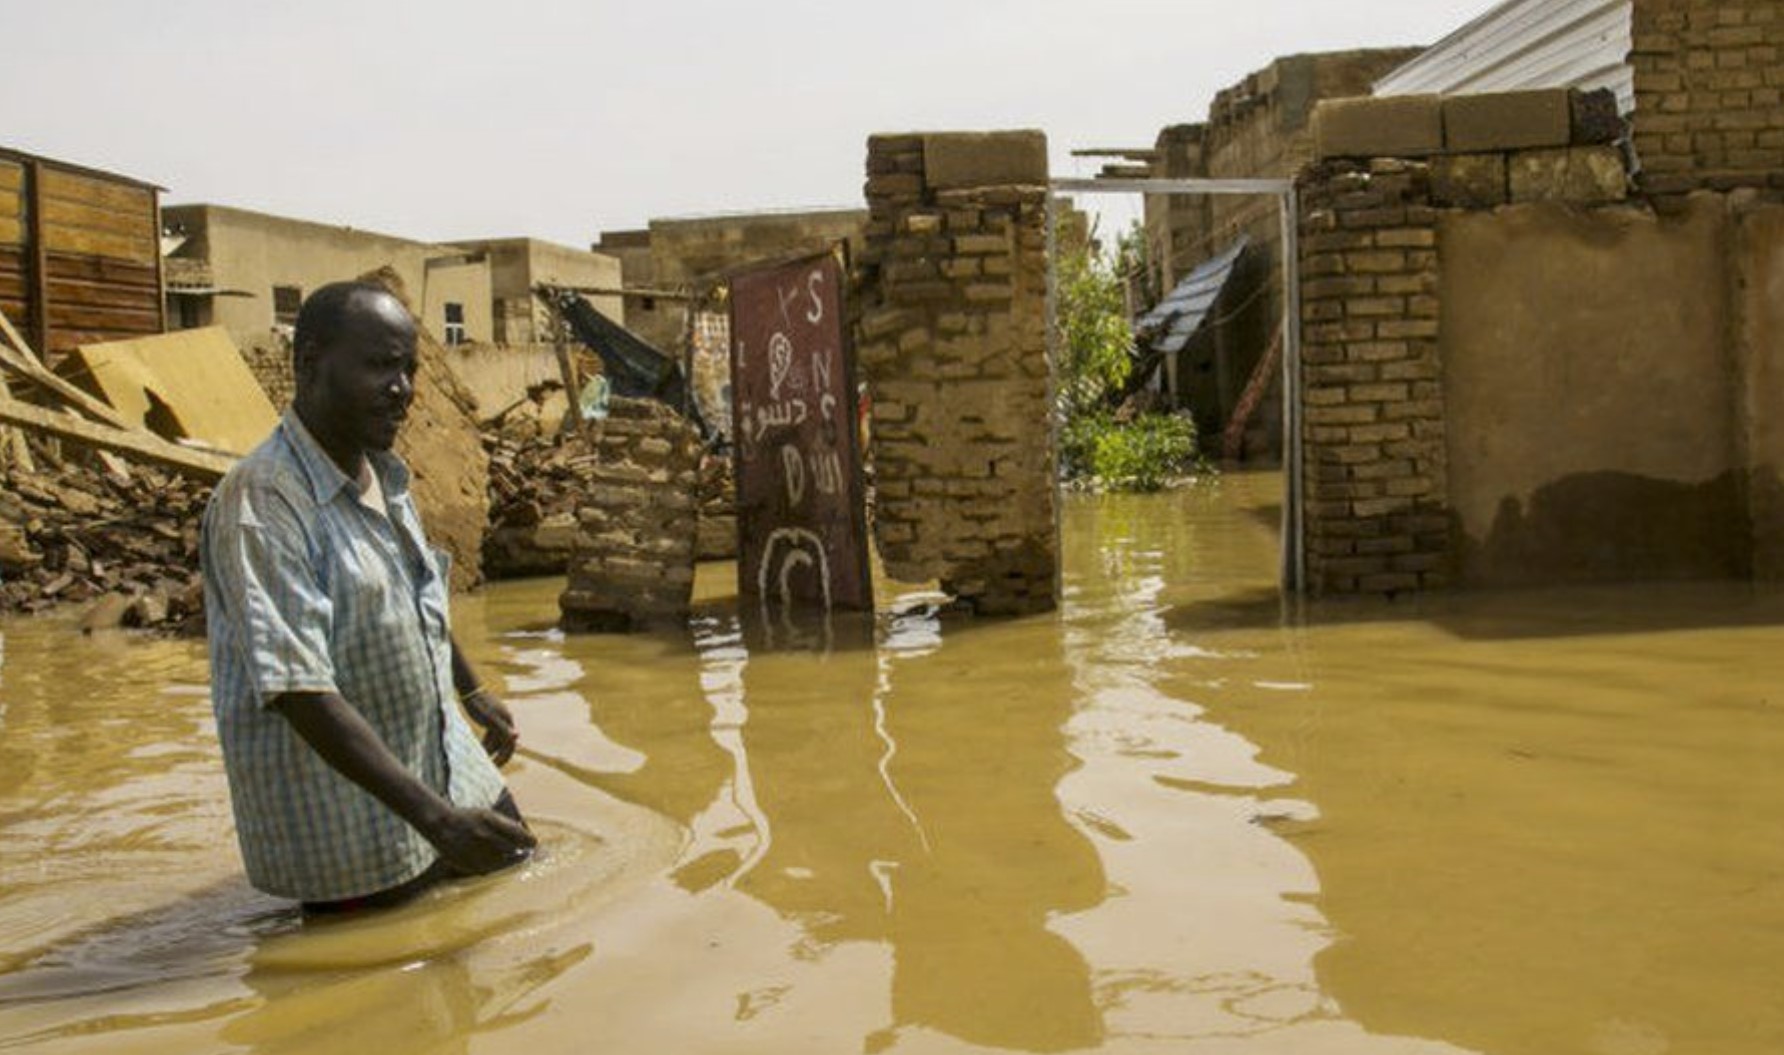 Смертельные наводнения охватили обширные районы Африки!  В Южном Судане, Чаде, Габоне и Нигерии введено чрезвычайное положение — миллионы людей эвакуированы, десятки погибших